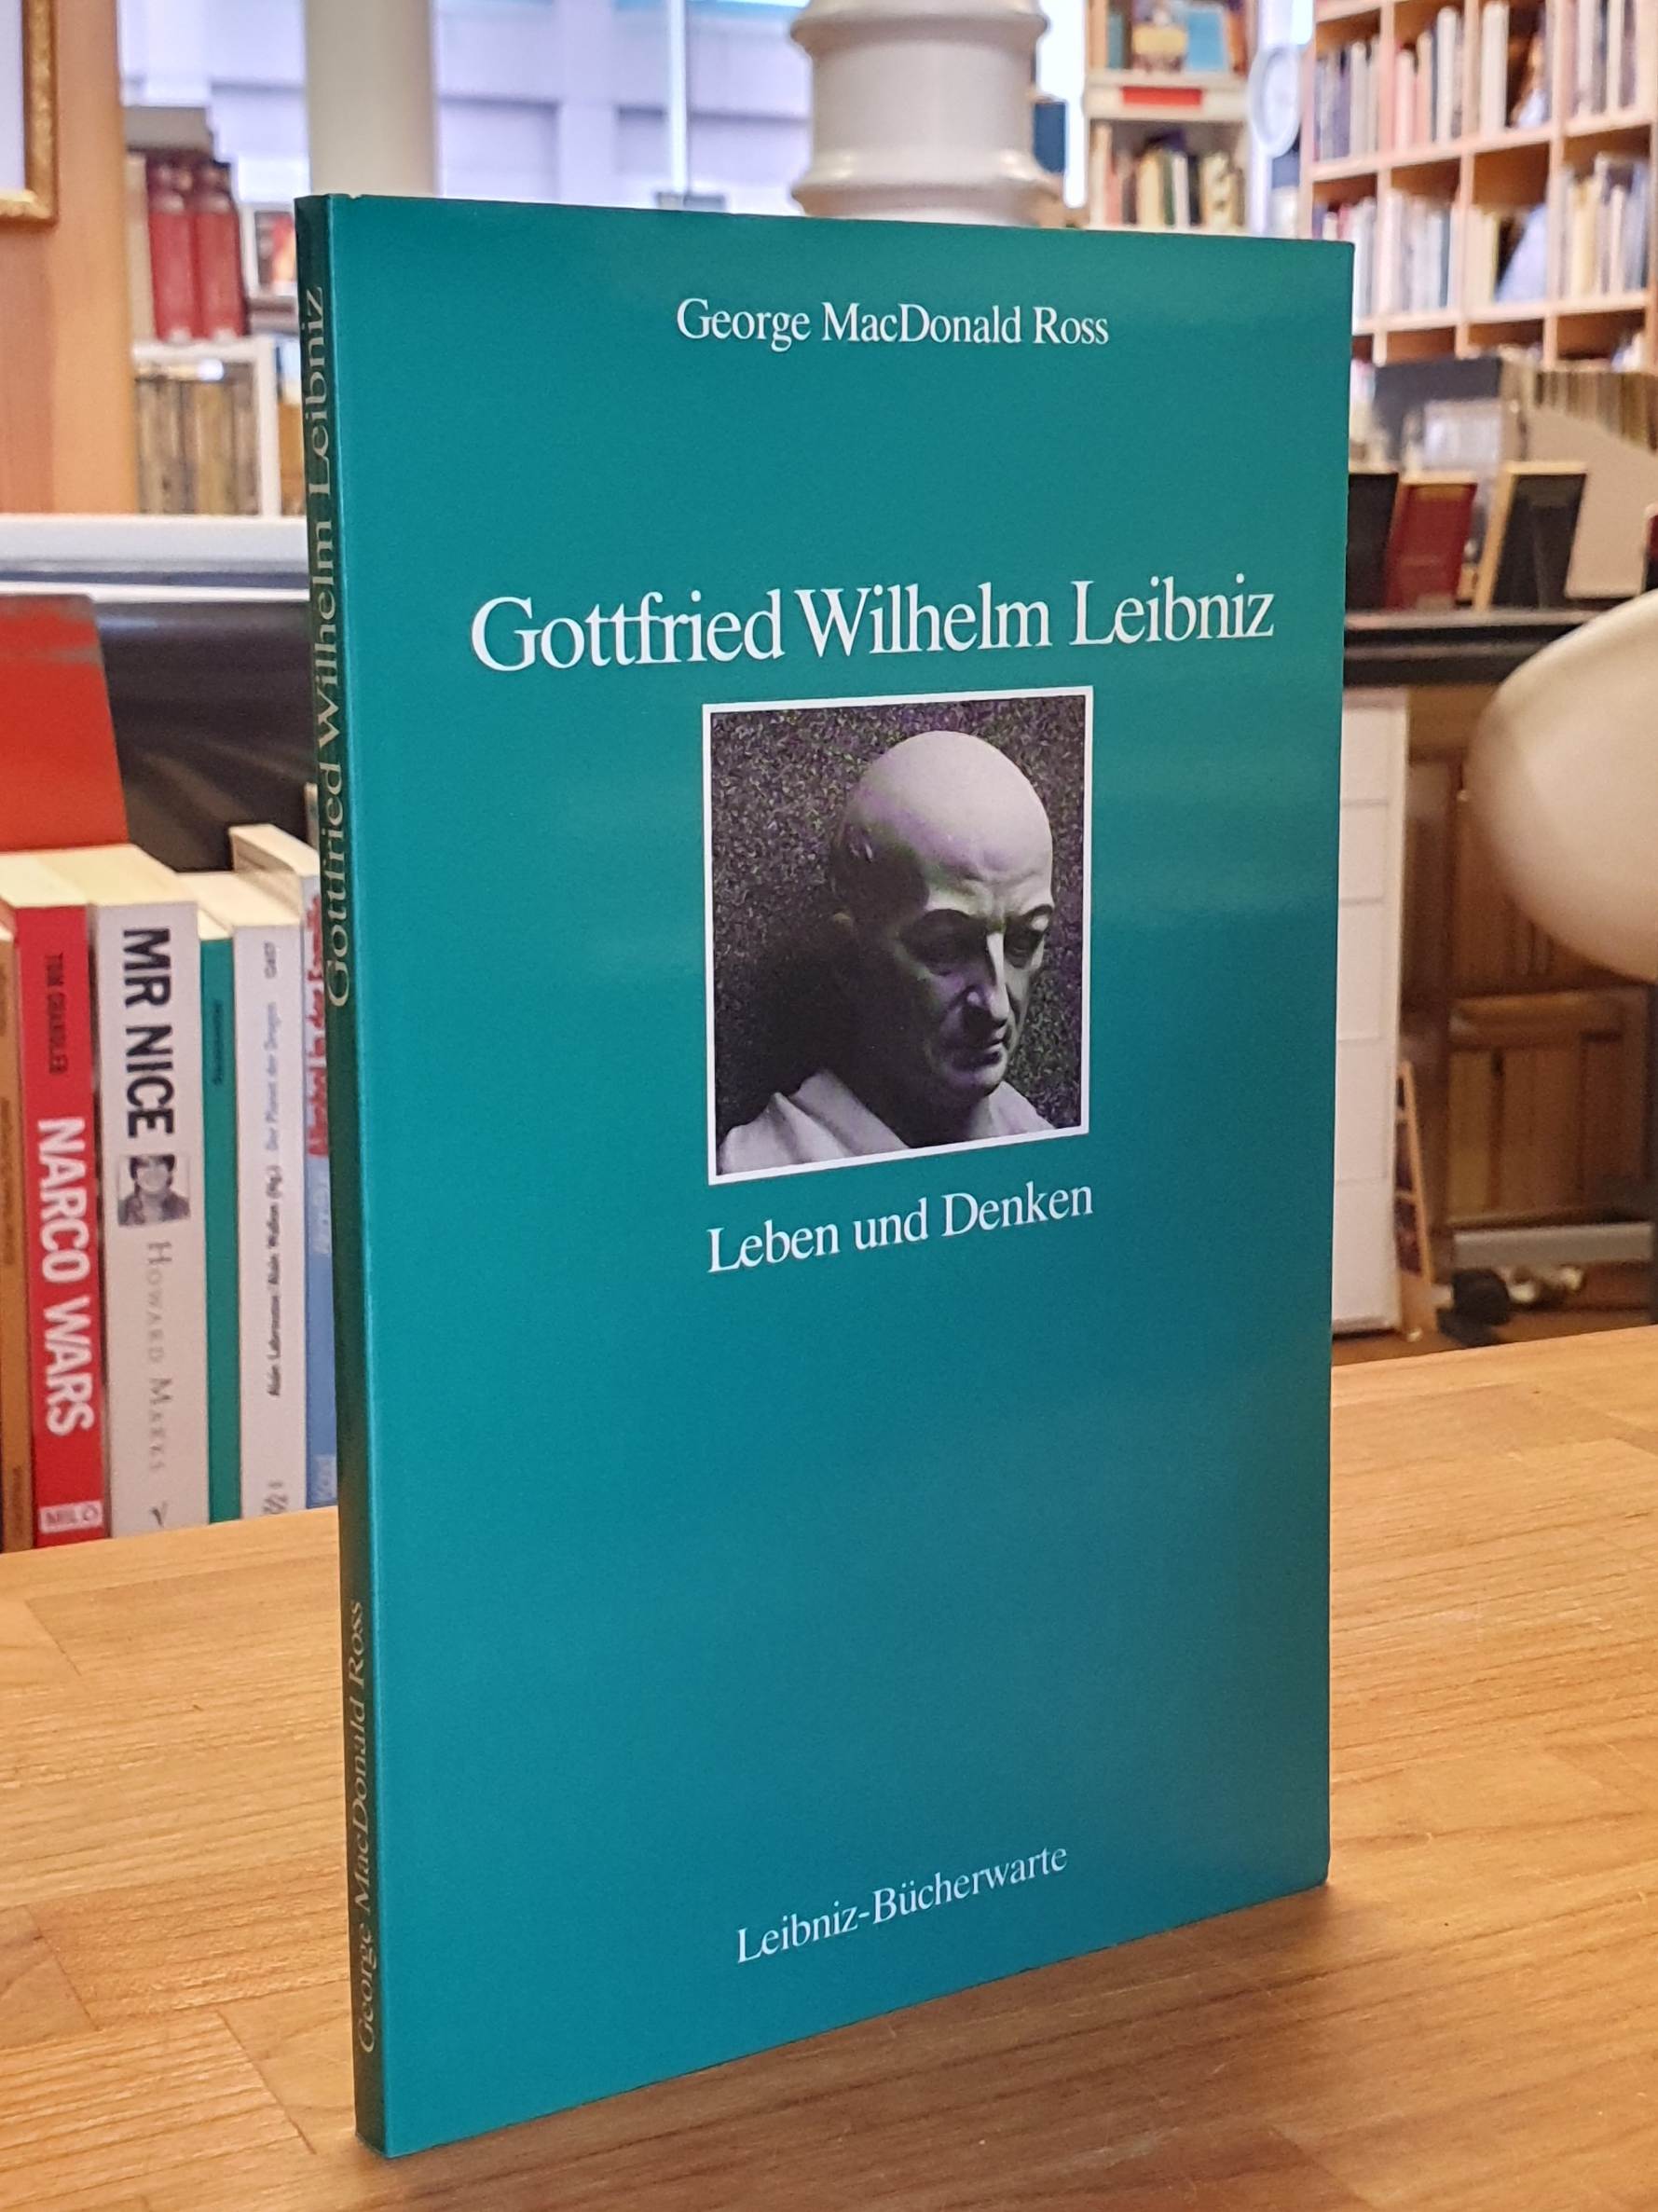 Gottfried Wilhelm Leibniz - Leben und Denken, aus dem Englischen von Birgit Leisenz und Rüdiger Majora, - Leibniz, Gottfried Wilhelm / George MacDonald Ross,